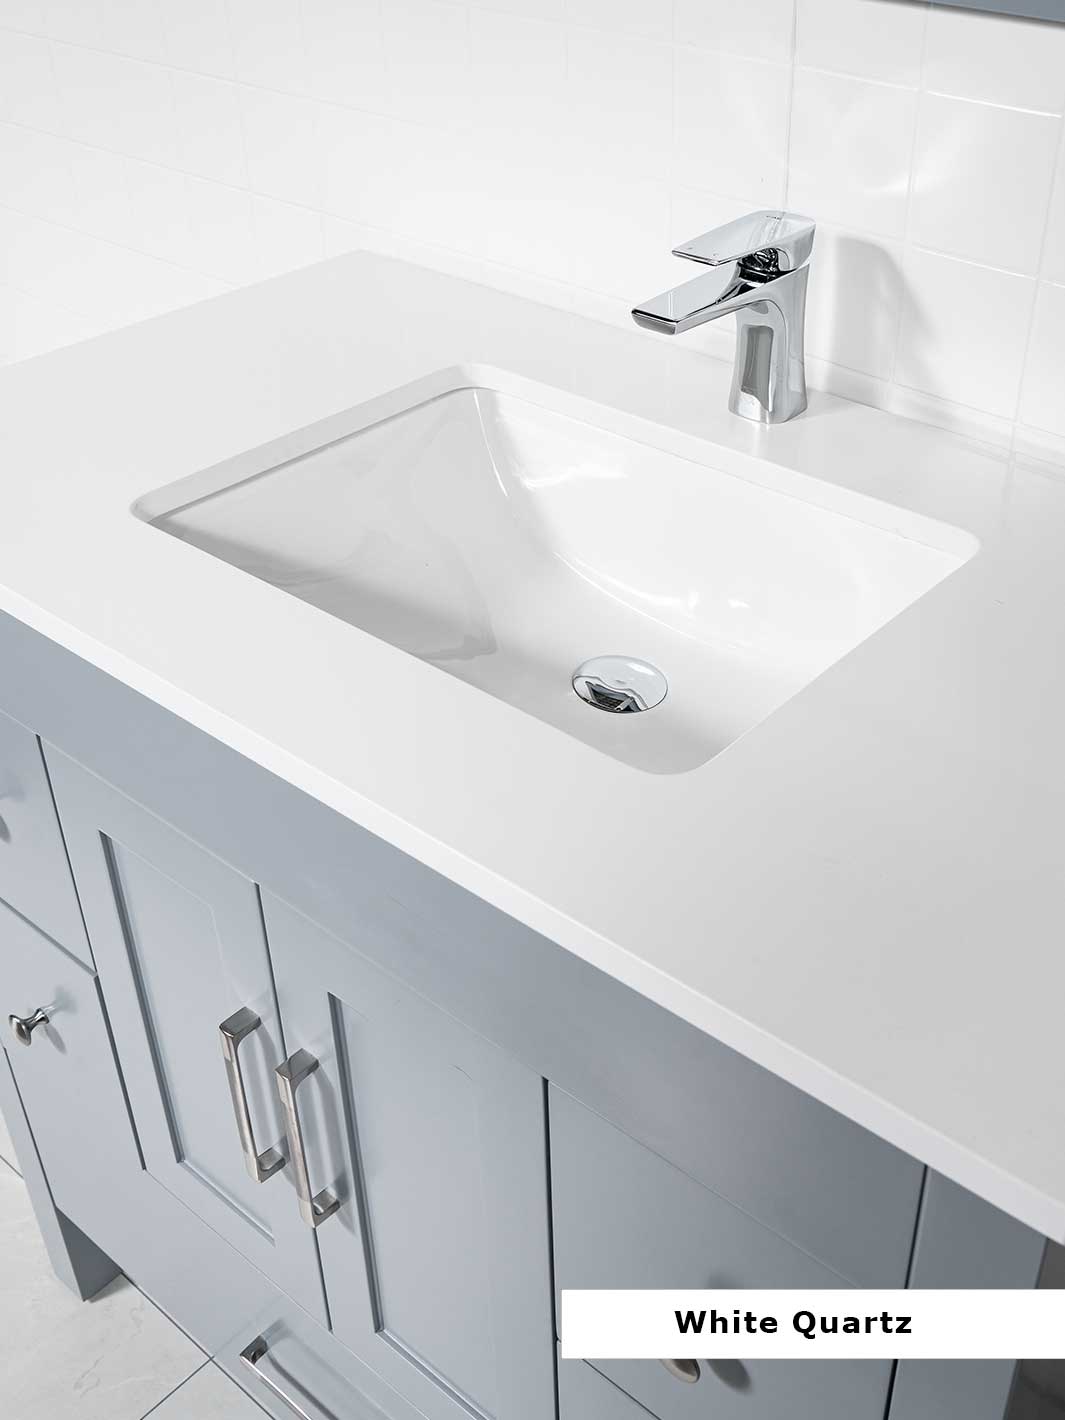 white quartz counter and chrome faucet